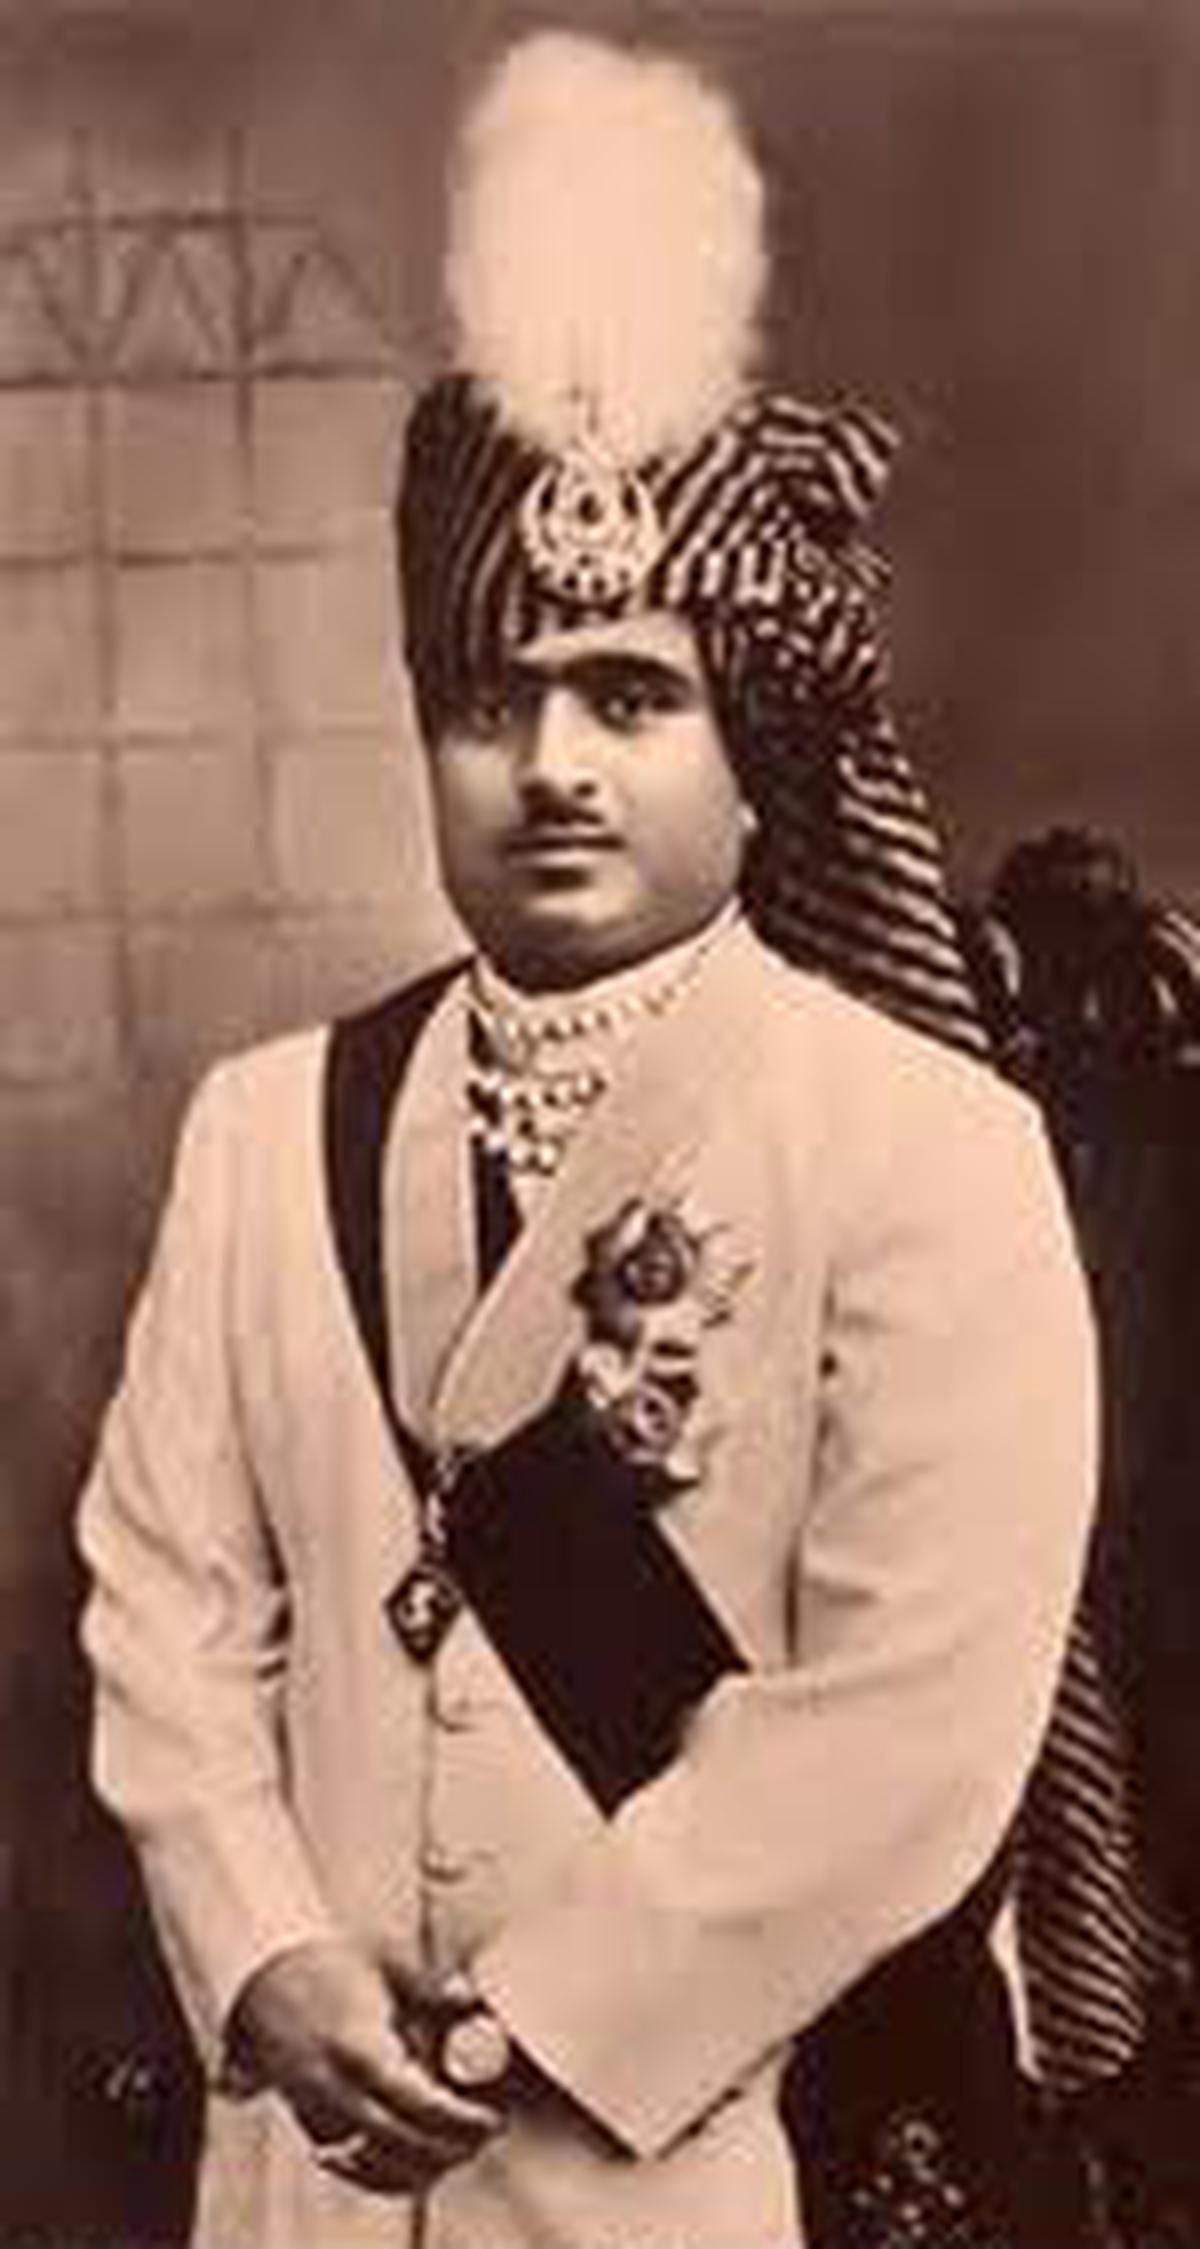 Mahabat Khan, the last ruling Nawab of Junagadh.